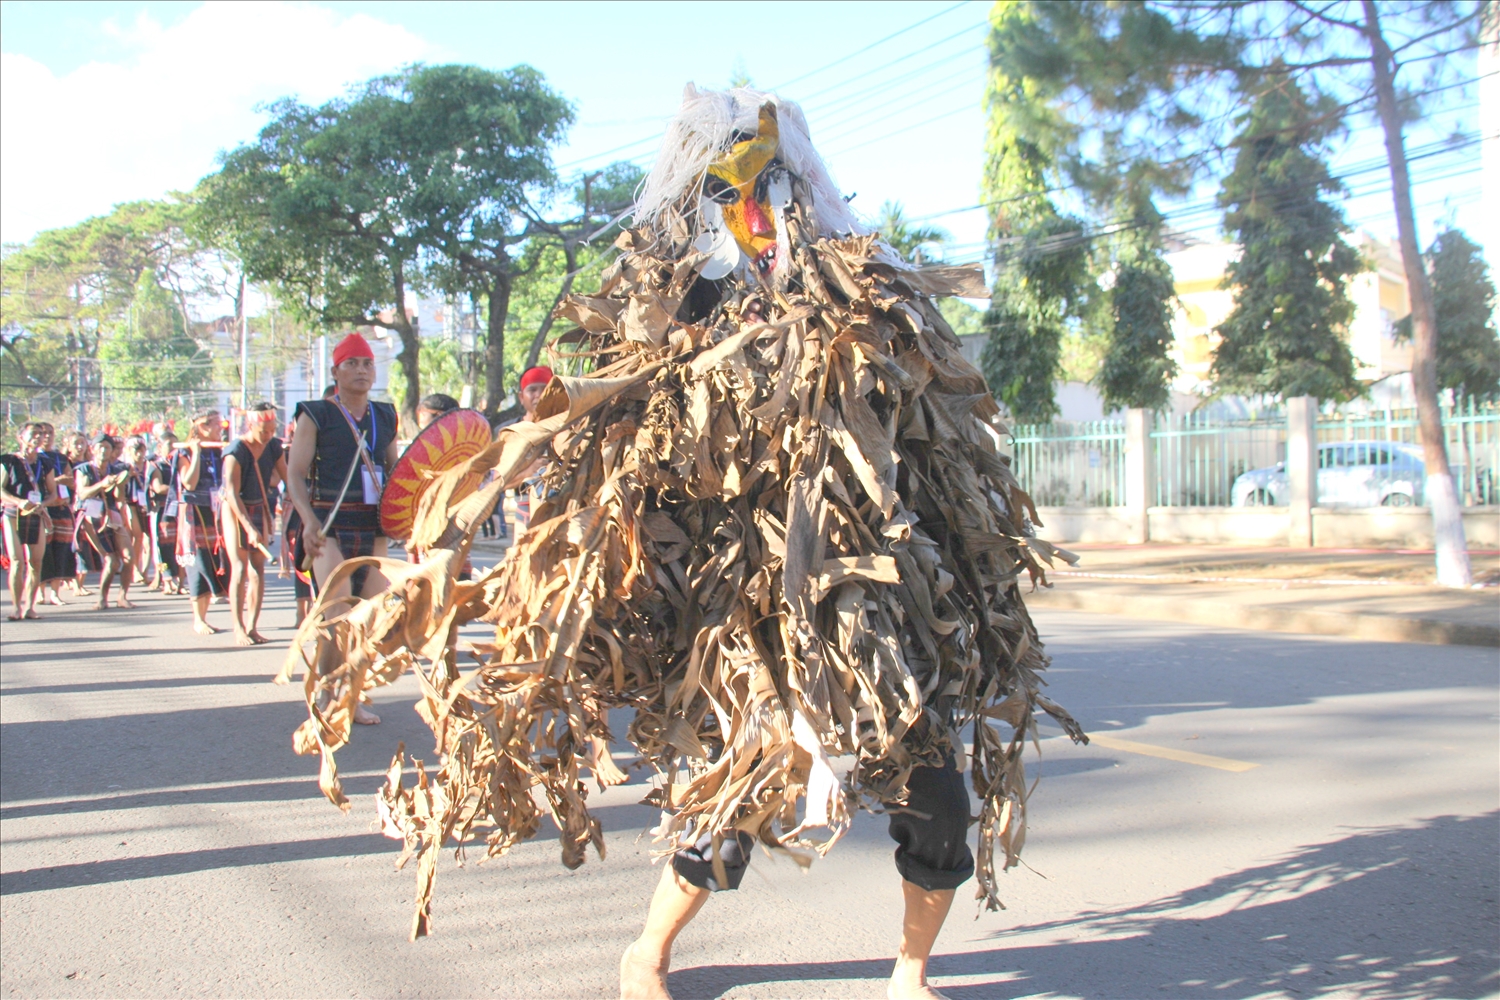 Pram đeo mặt nạ, tạo hình tóc bằng rễ cây, mặc bộ trang phục kết bằng lá chuối khô xuất hiện trong lễ hội đường phố